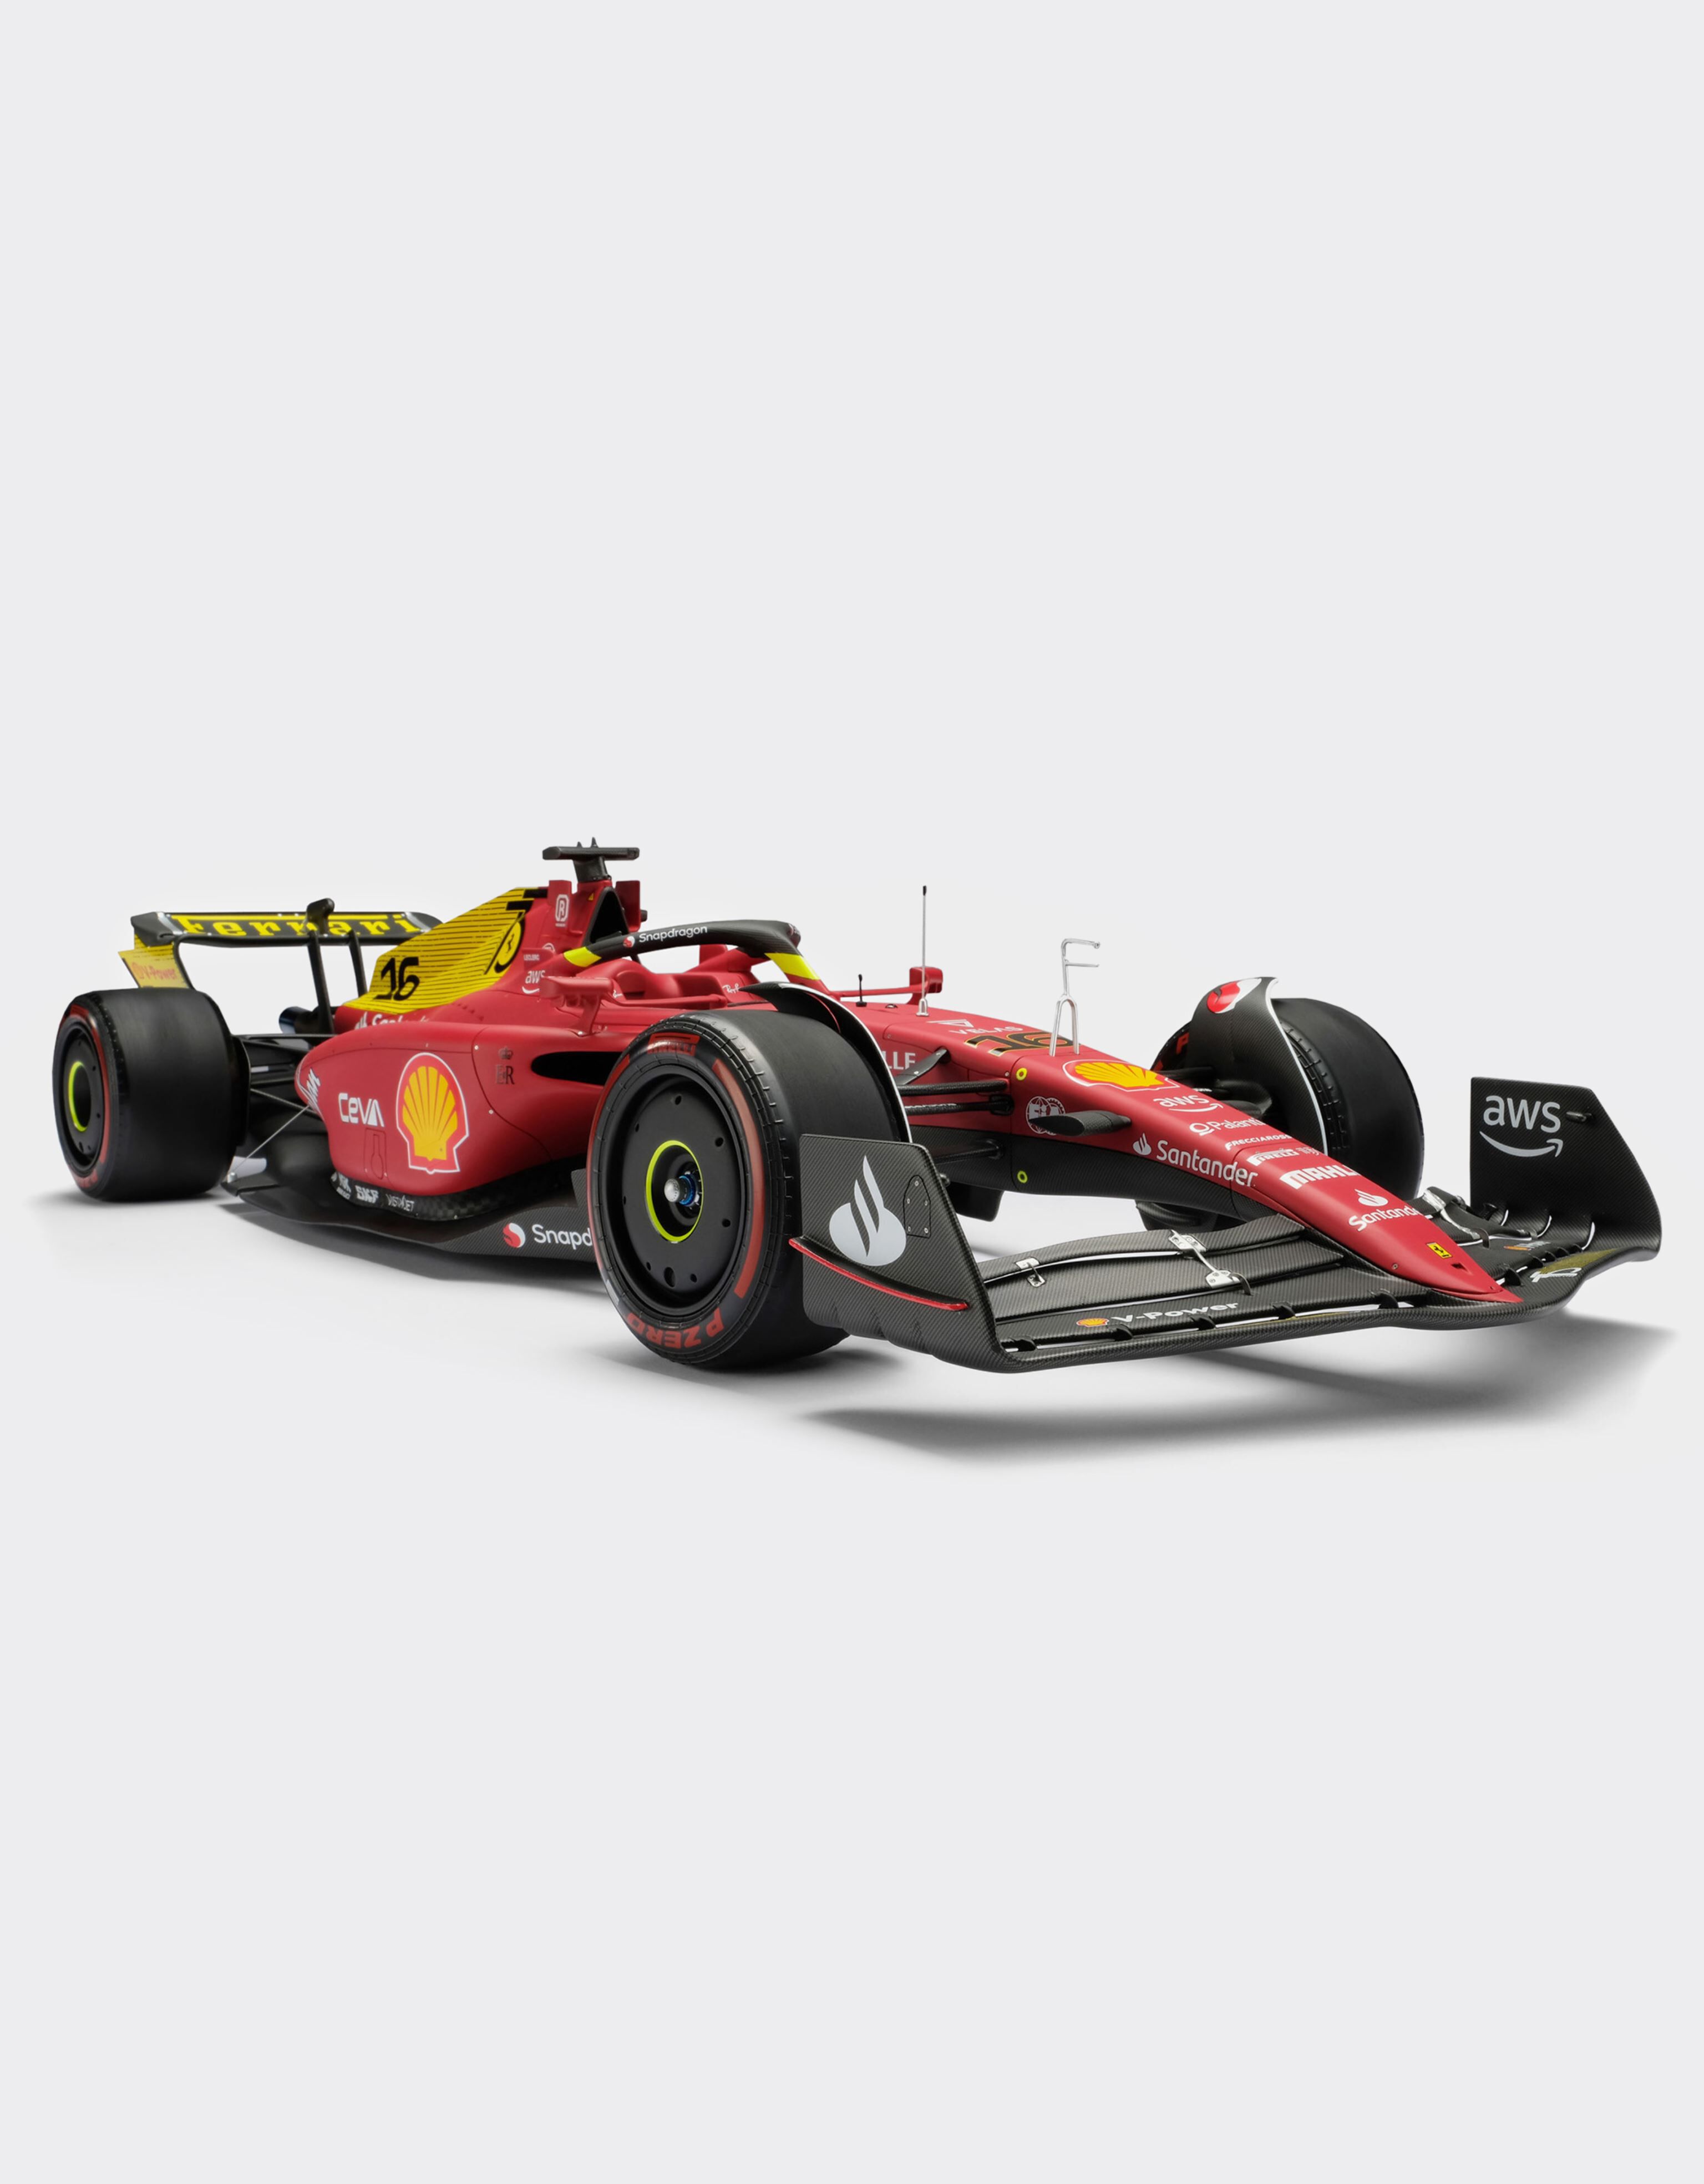 Ferrari F1-75 シャルル・ルクレール モデルカー 1:8スケール、Rosso 